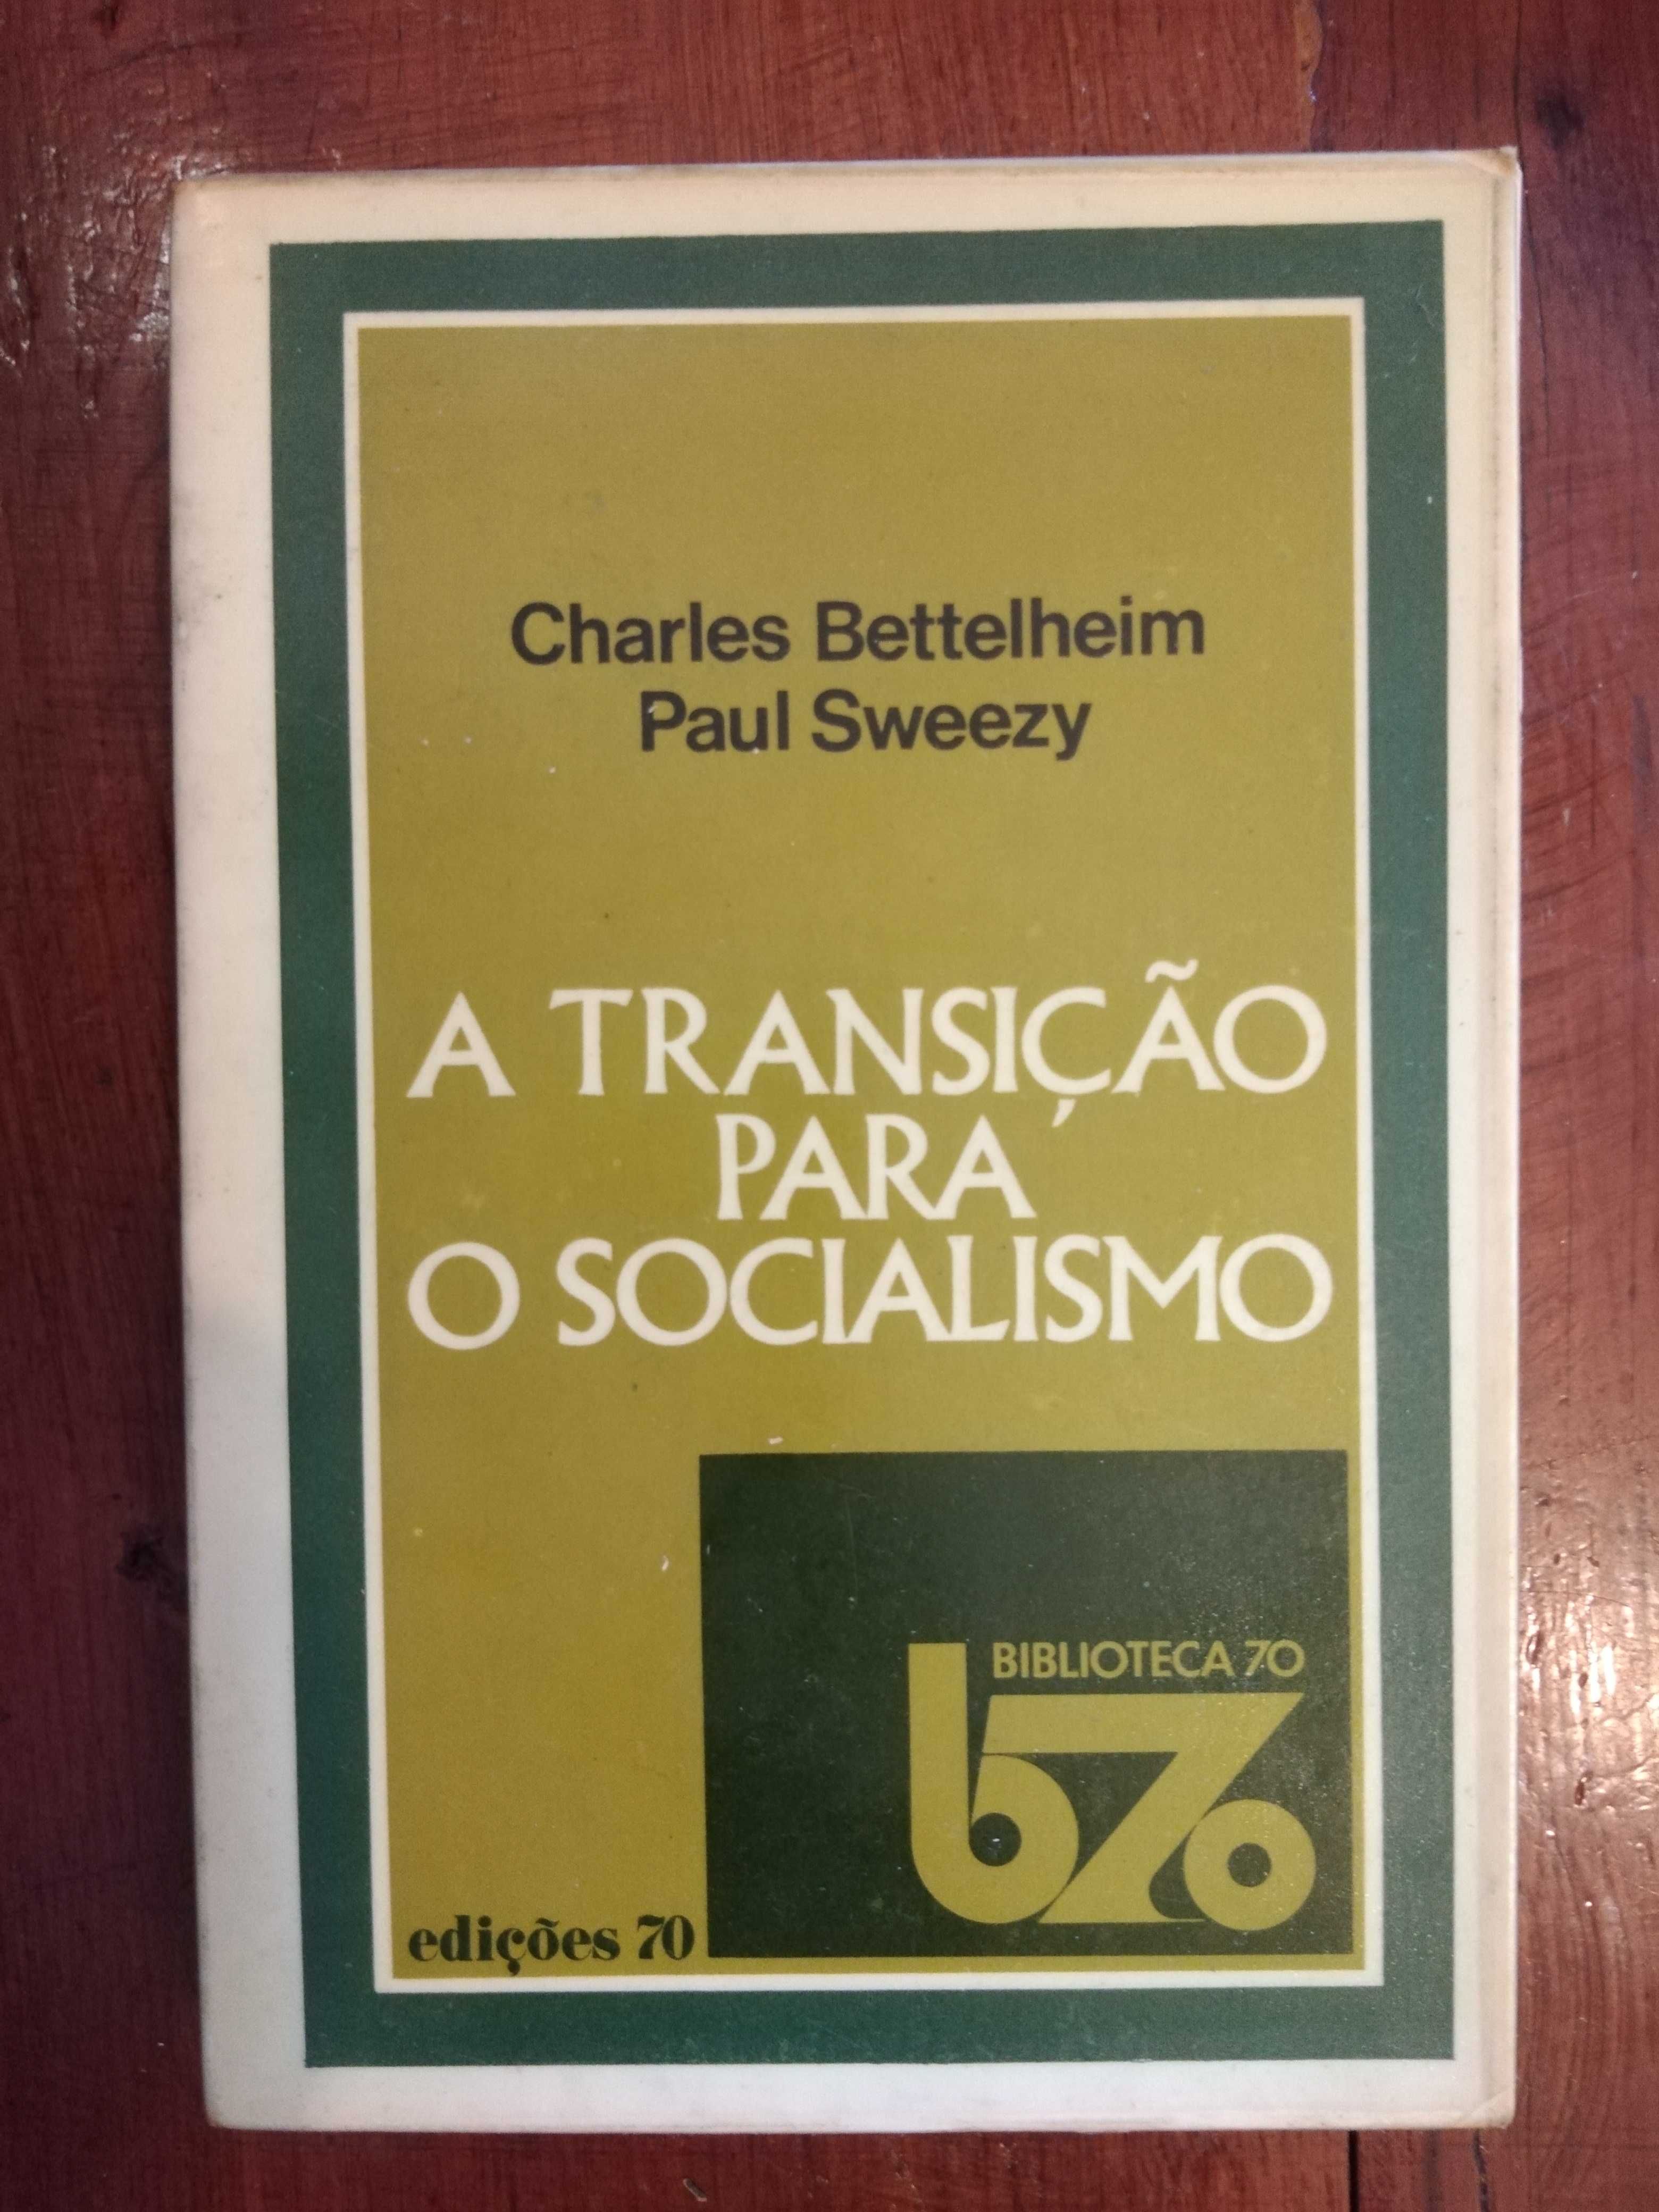 Charles Bettelheim e Paul Sweezy - A transição para o Socialismo